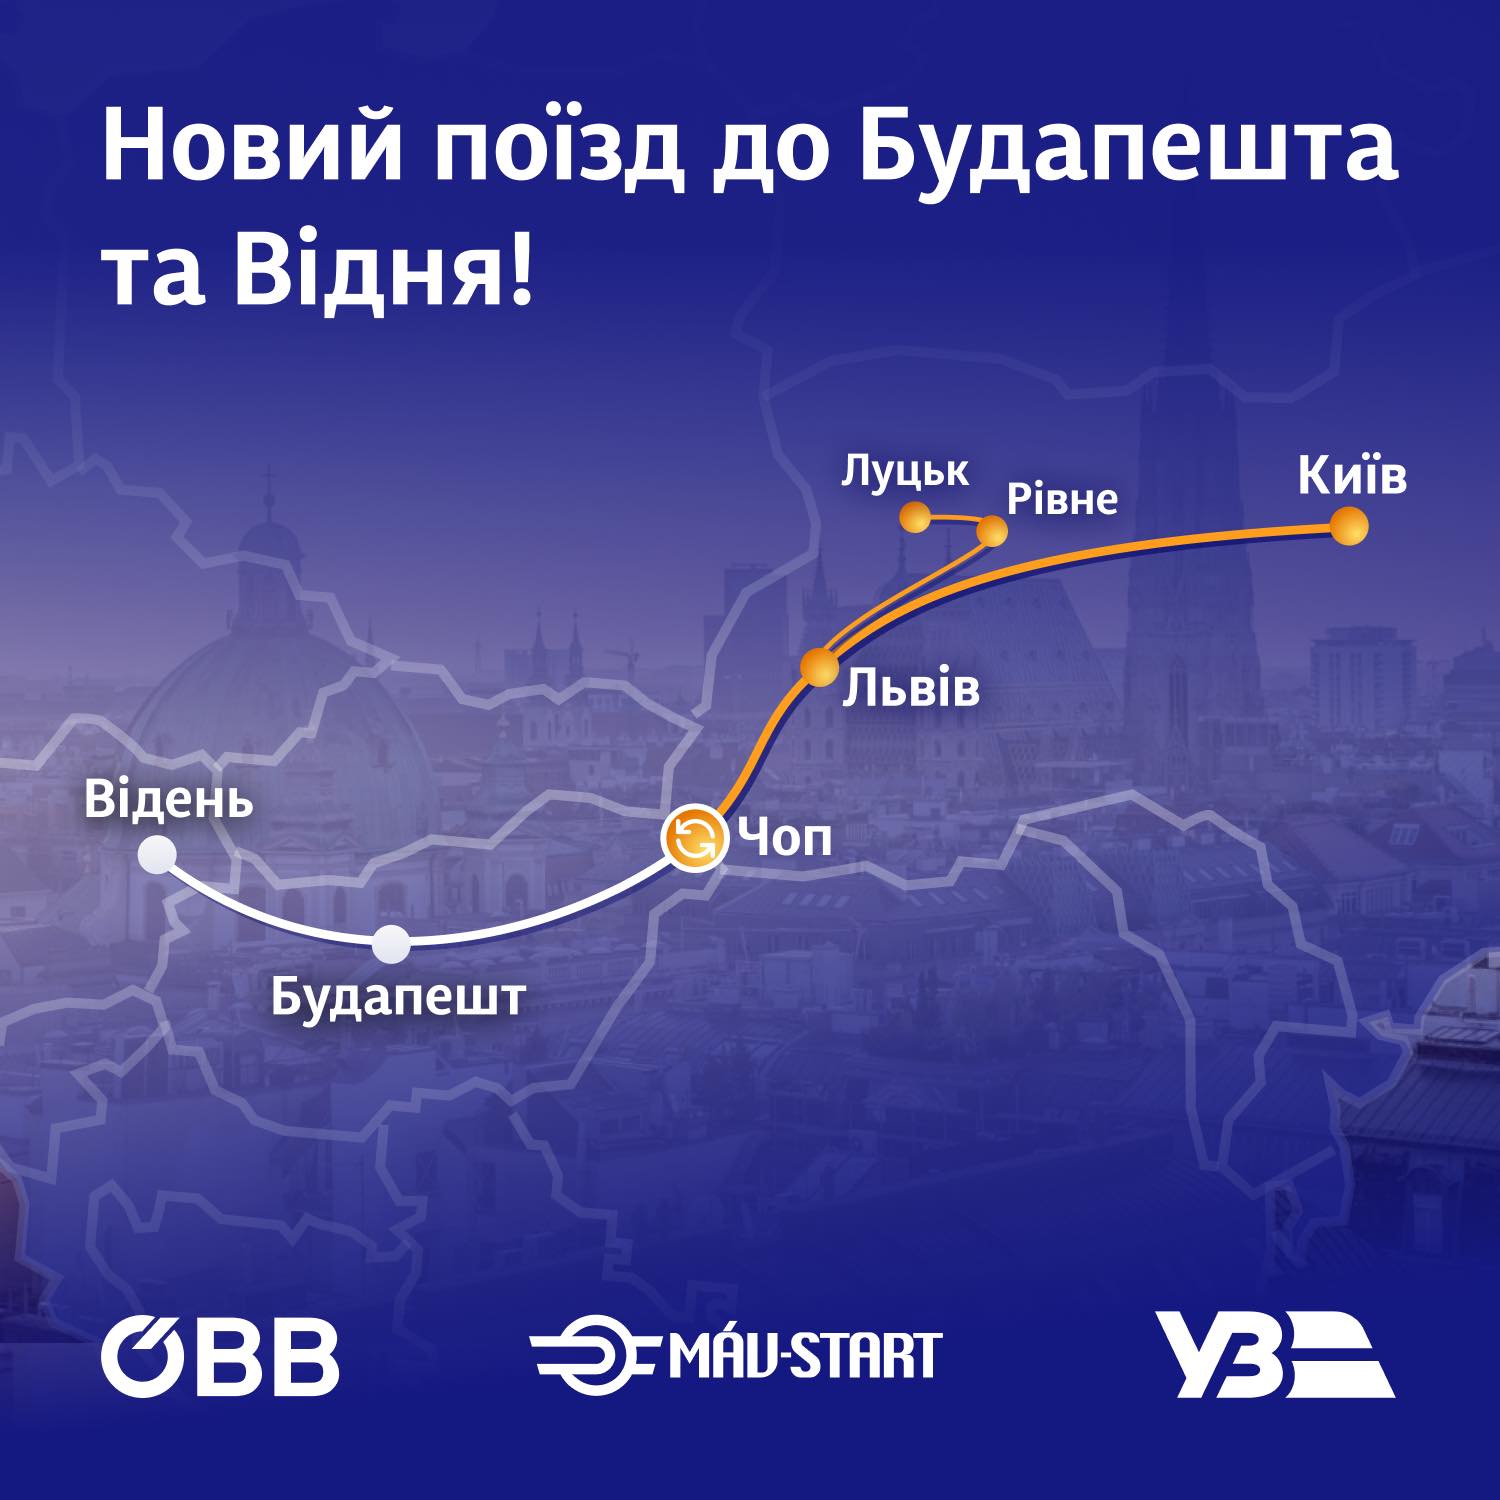 Схема маршруту до Відня. Джерело: Укрзалізниця